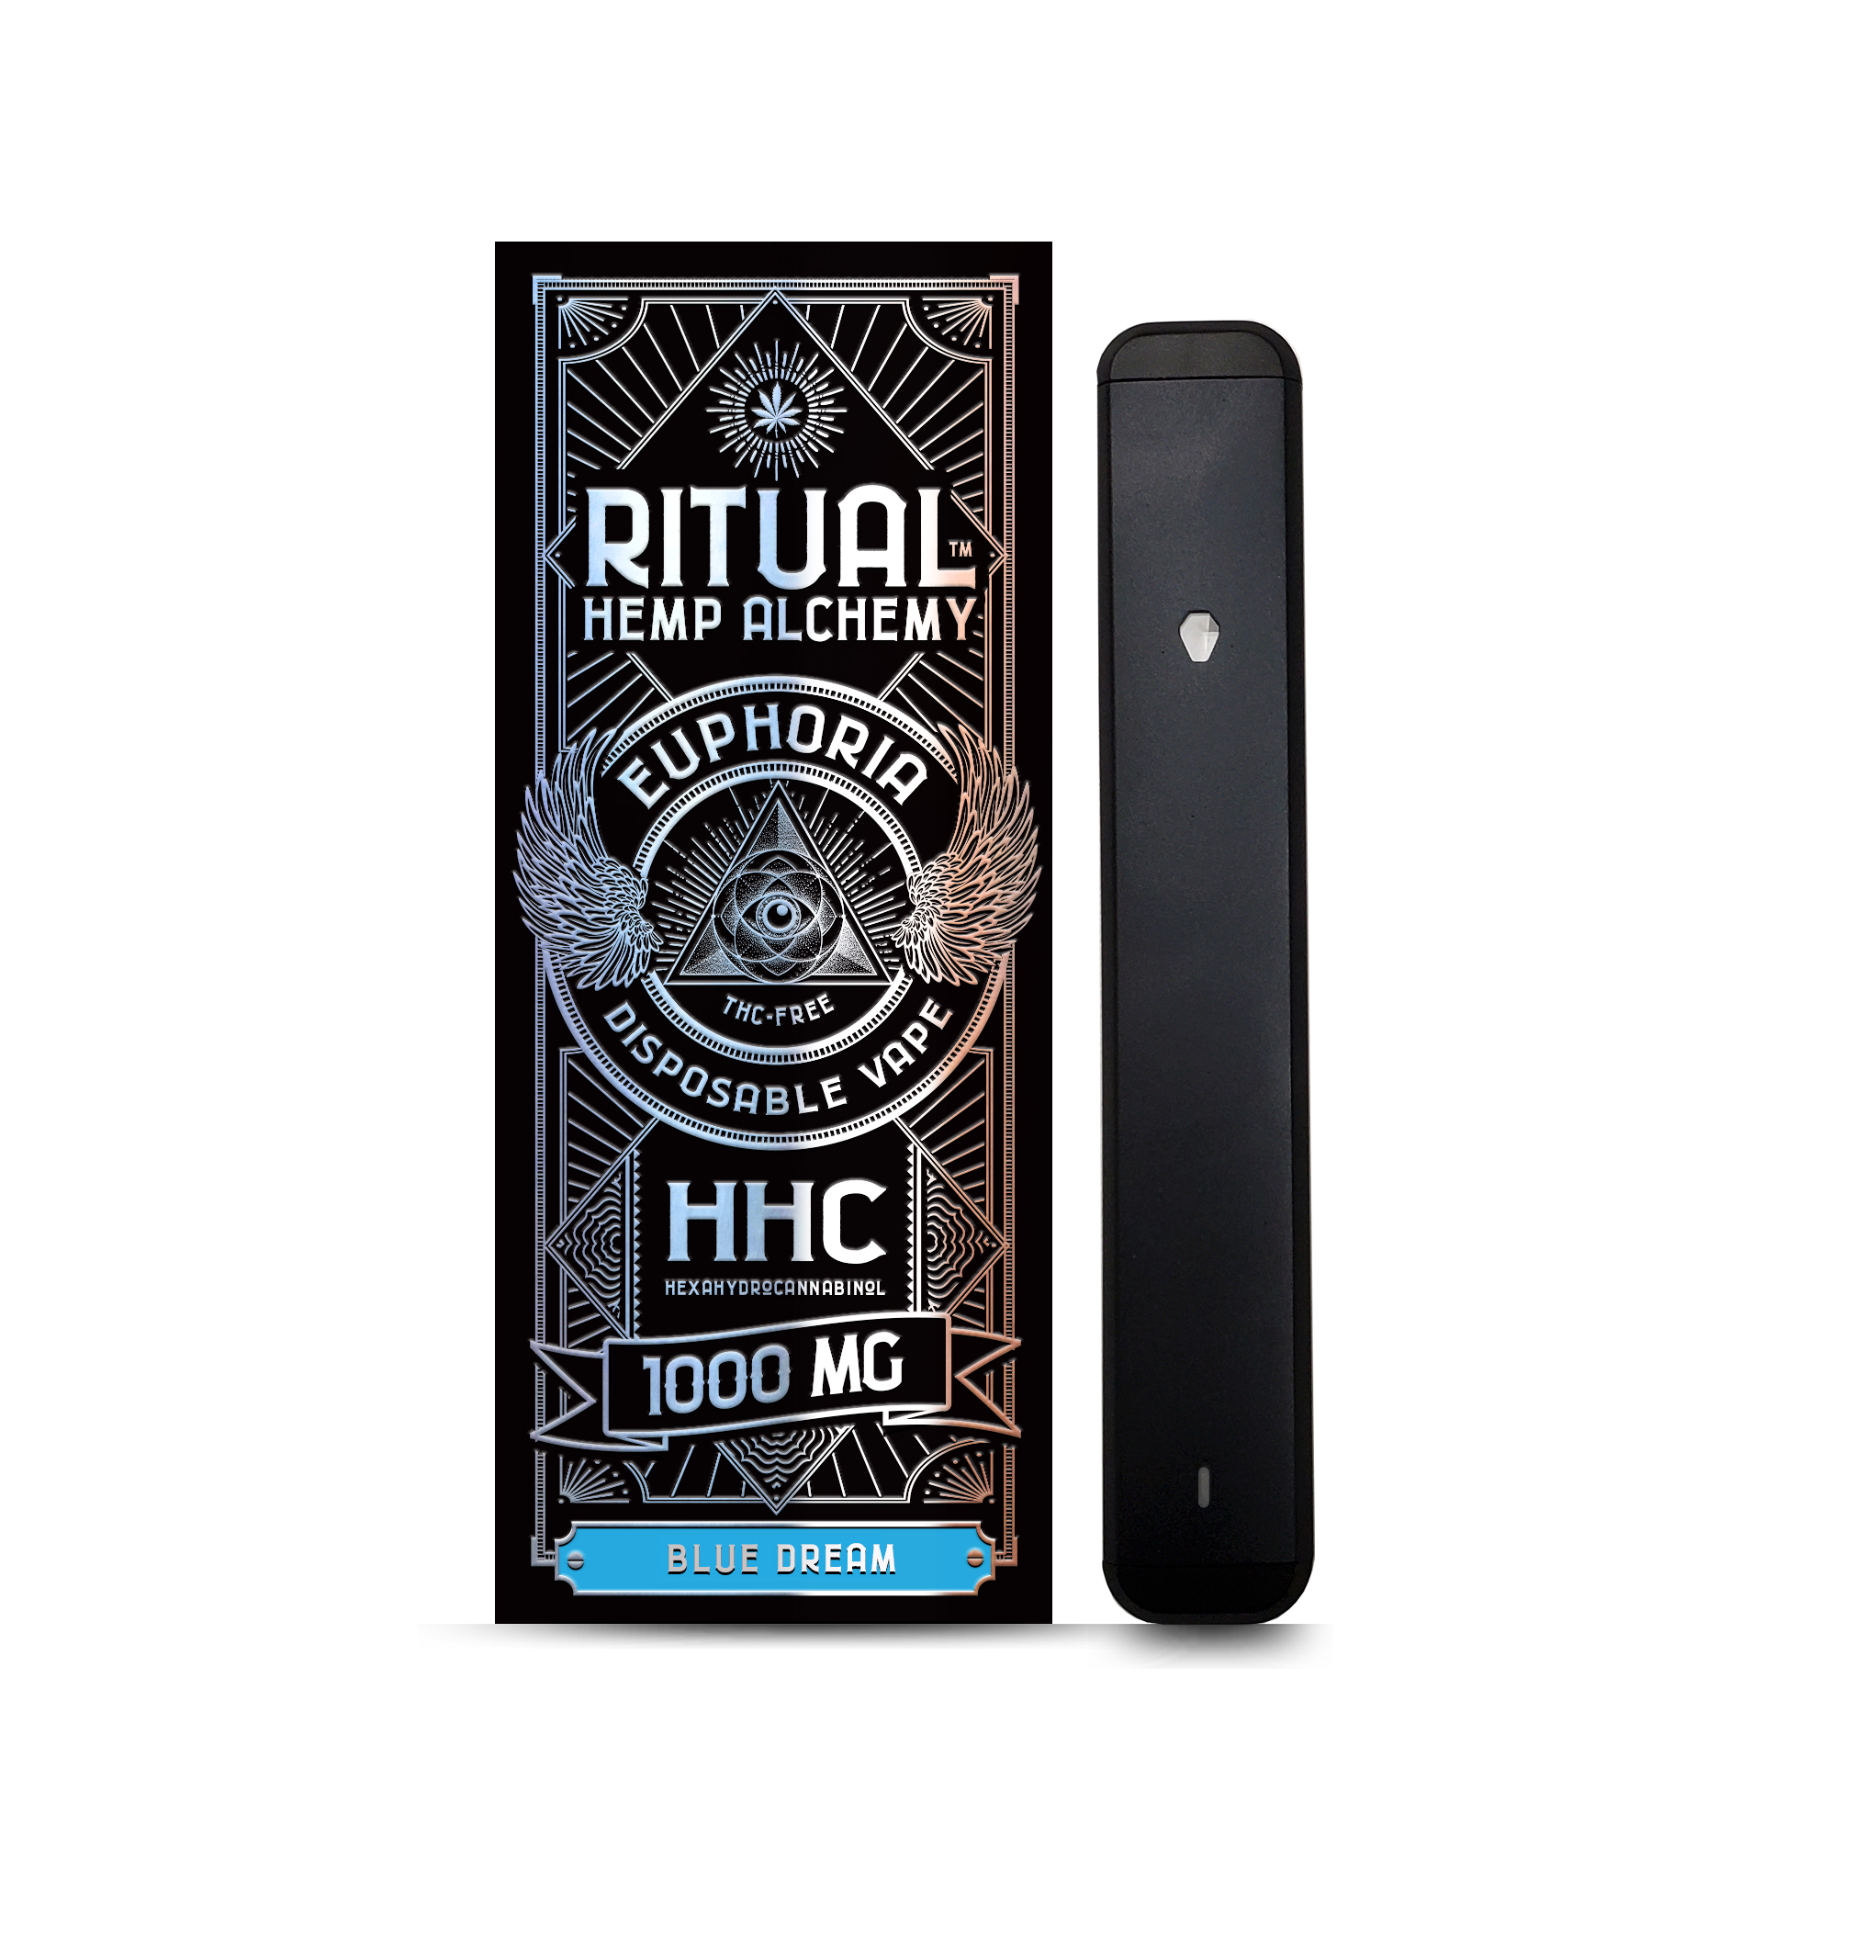 Ritual Hemp Alchemy 1000mg HHC Disposable Vape Pen, Blue Dream